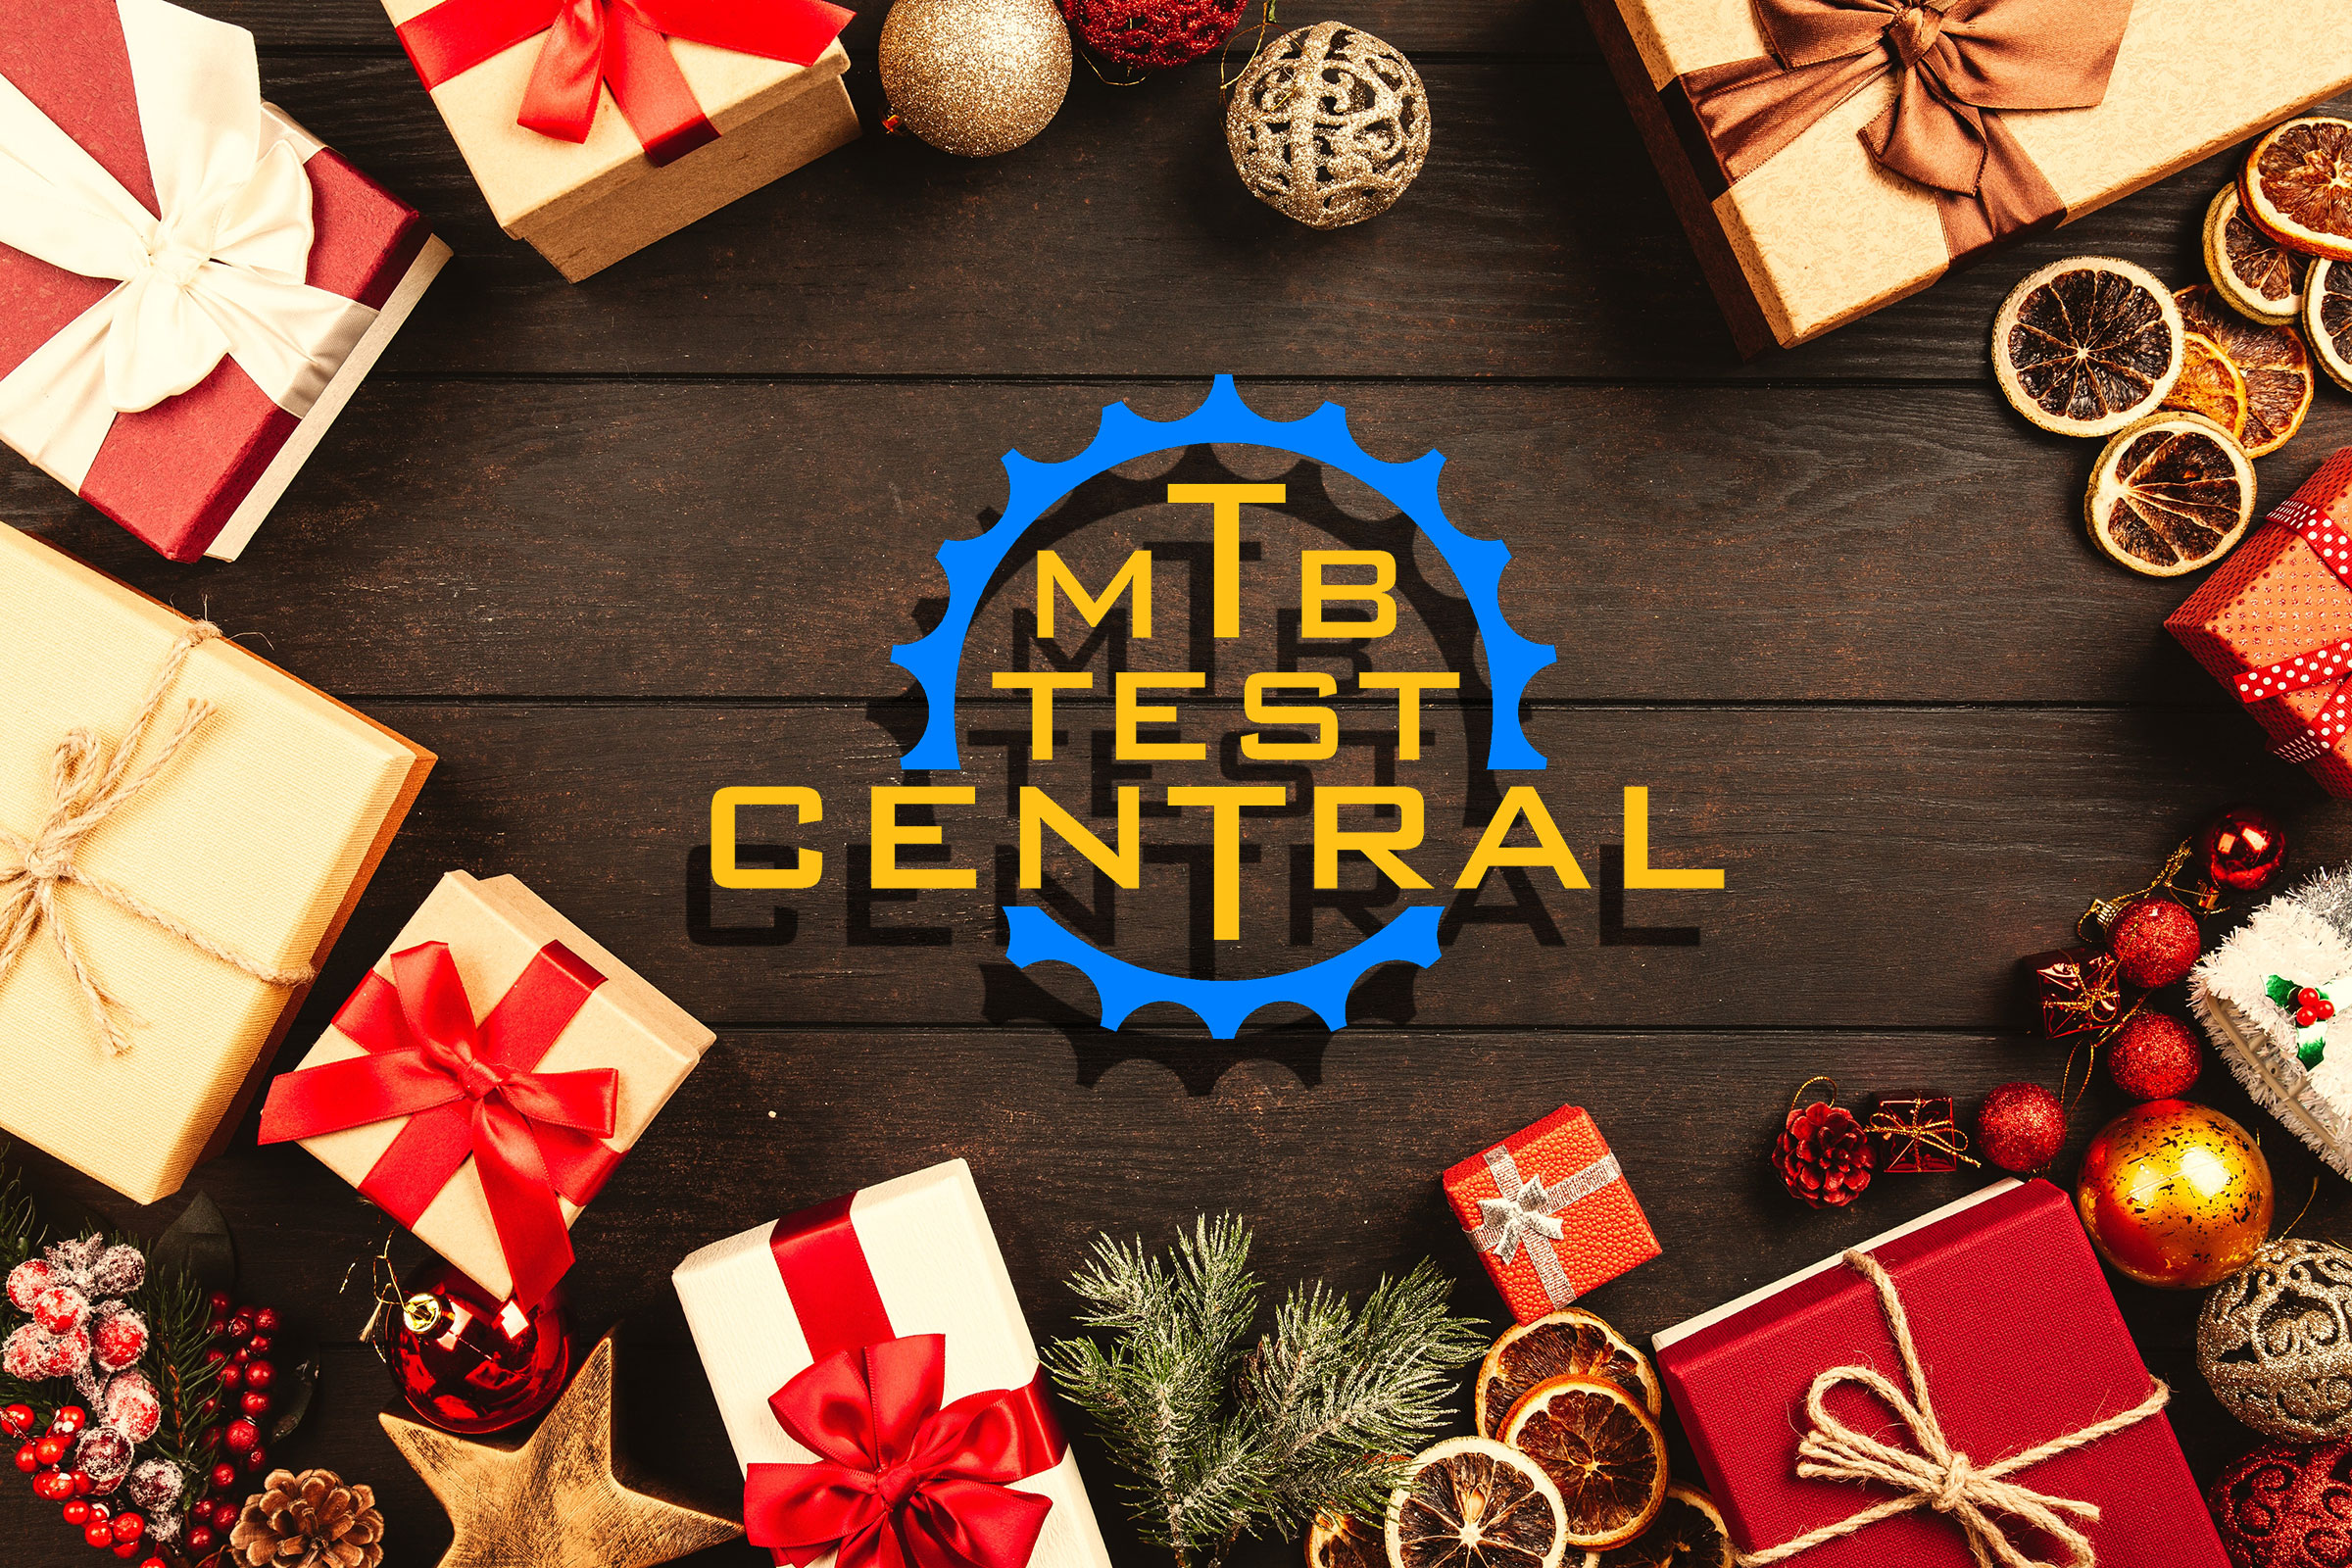 Regali Di Natale Per Chi Ha Tutto.Idee Regalo Di Natale 2018 Per Mountain Biker Mtb Test Central